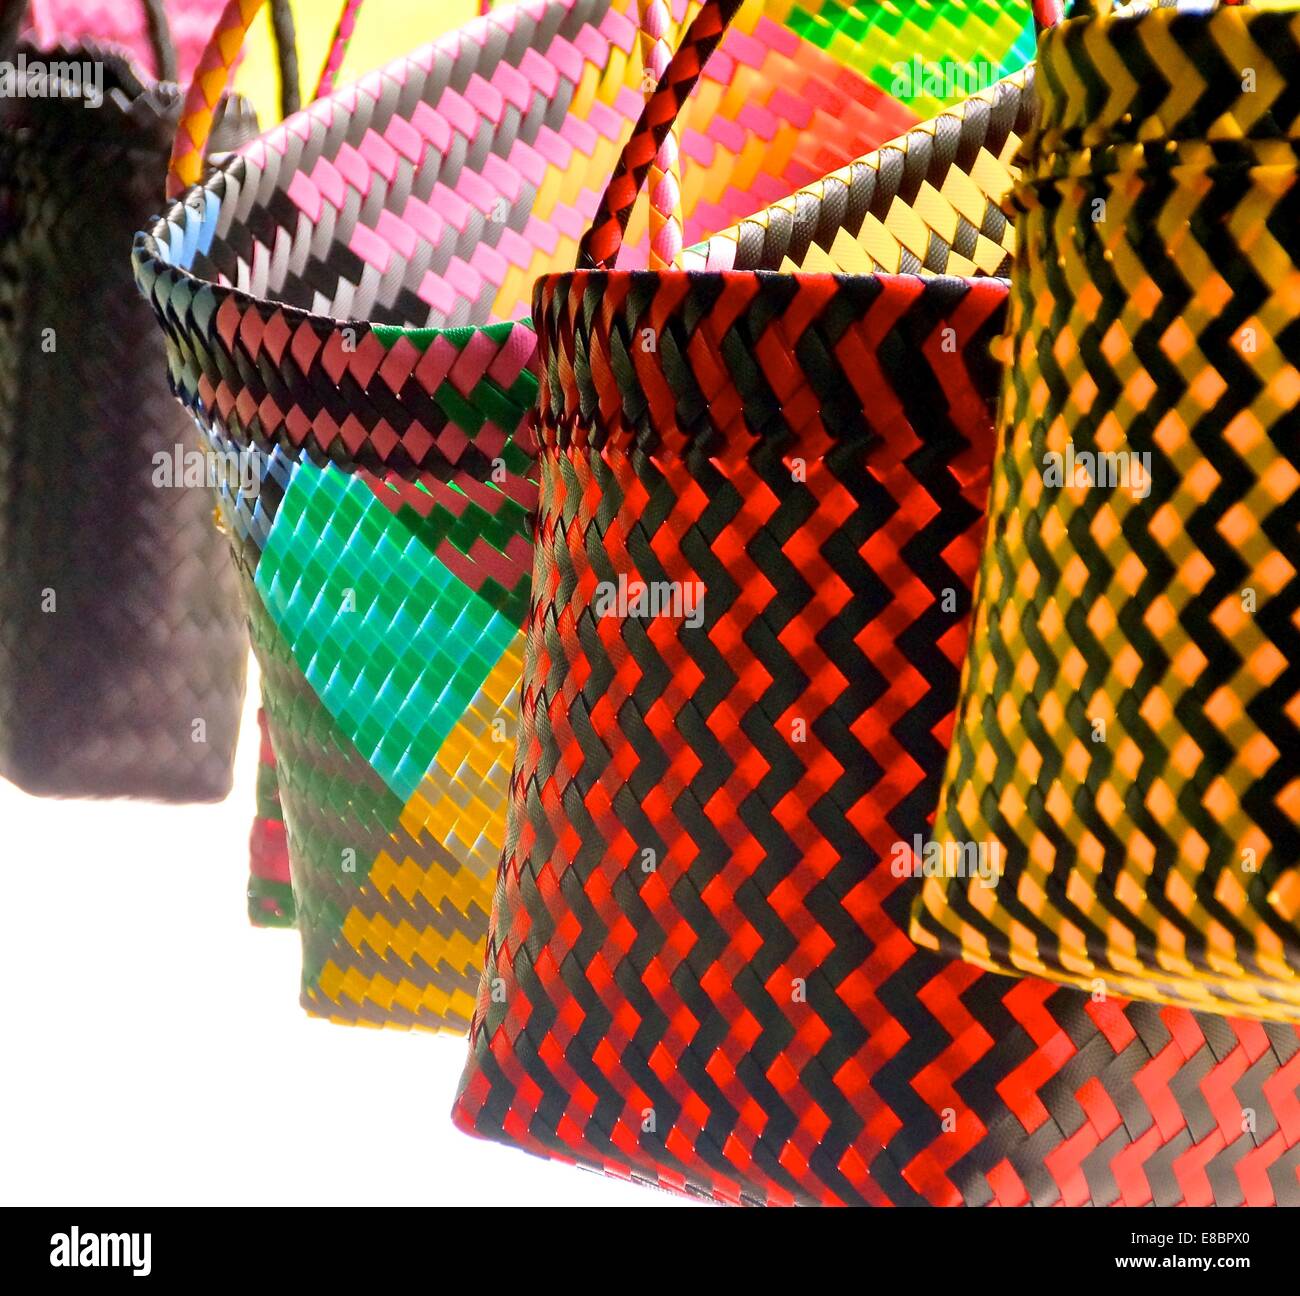 Des sacs colorés libre dans la couture traditionnelle autochtone Banque D'Images